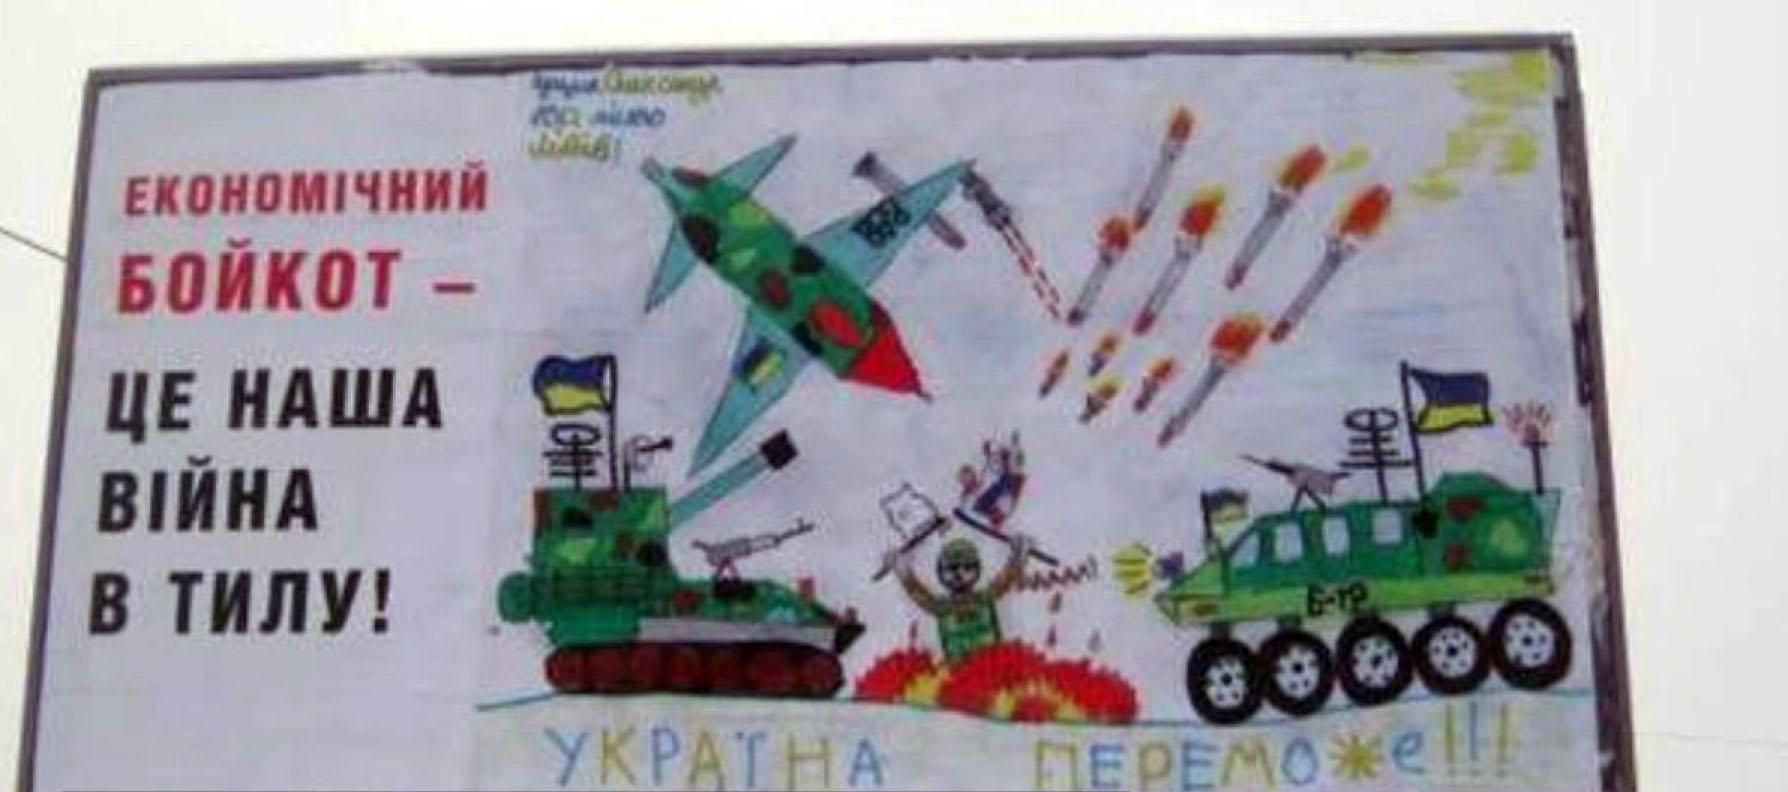 Самые актуальные кадры 11 декабря: билборд с рисунком школьника, протесты против РФ в Турции